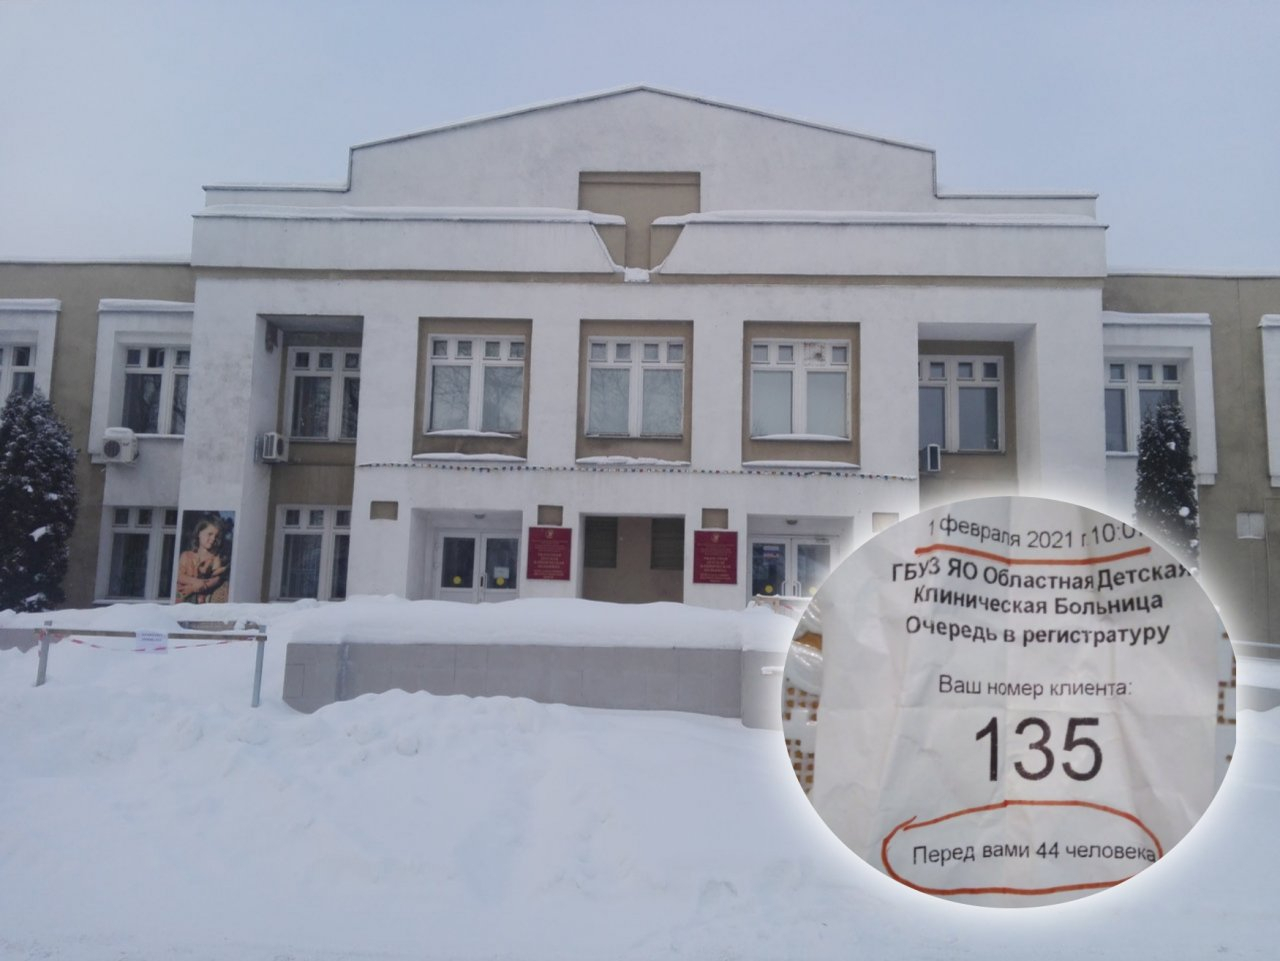 «Дети нажимают на экран»: поликлиника в Ярославле объяснила очереди